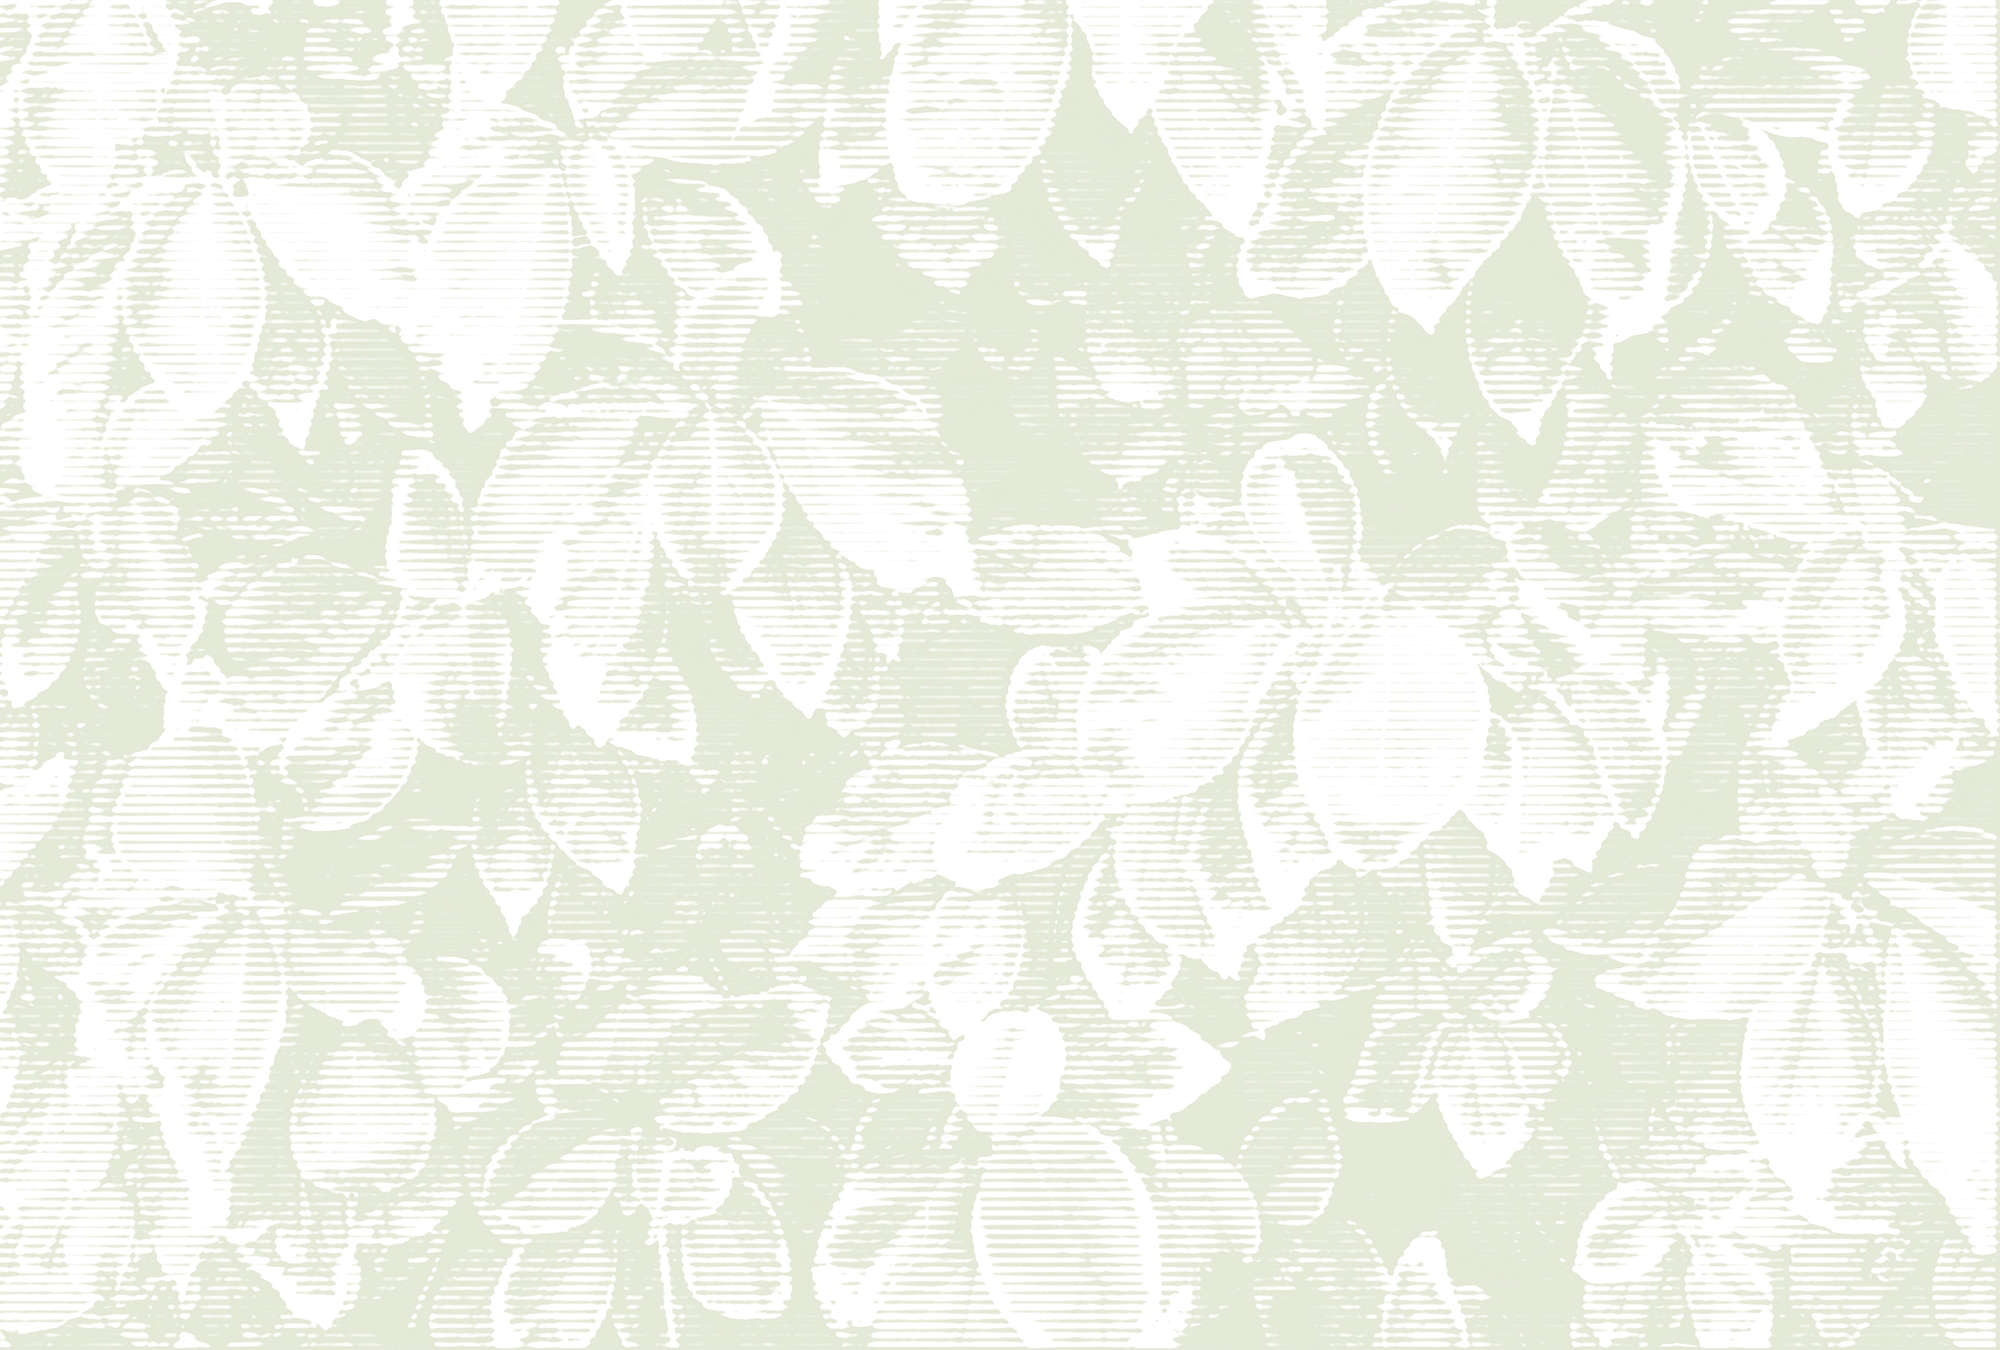             Fototapete natürliches Blättermuster im Vintage Stil – Grün, Weiß
        